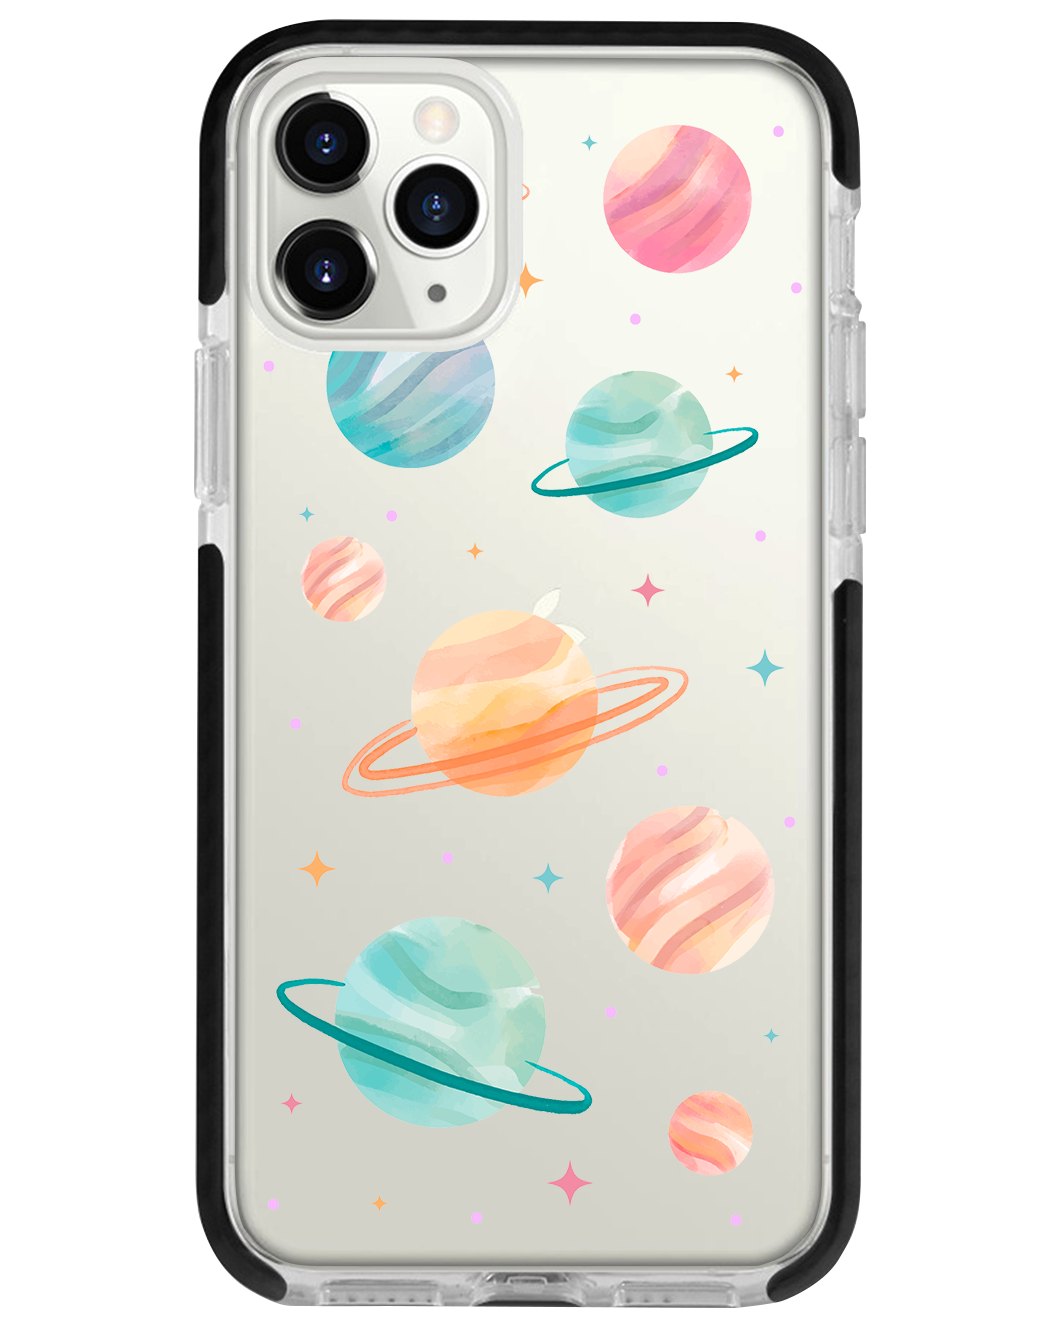 iPhone - Planetarium 1.0